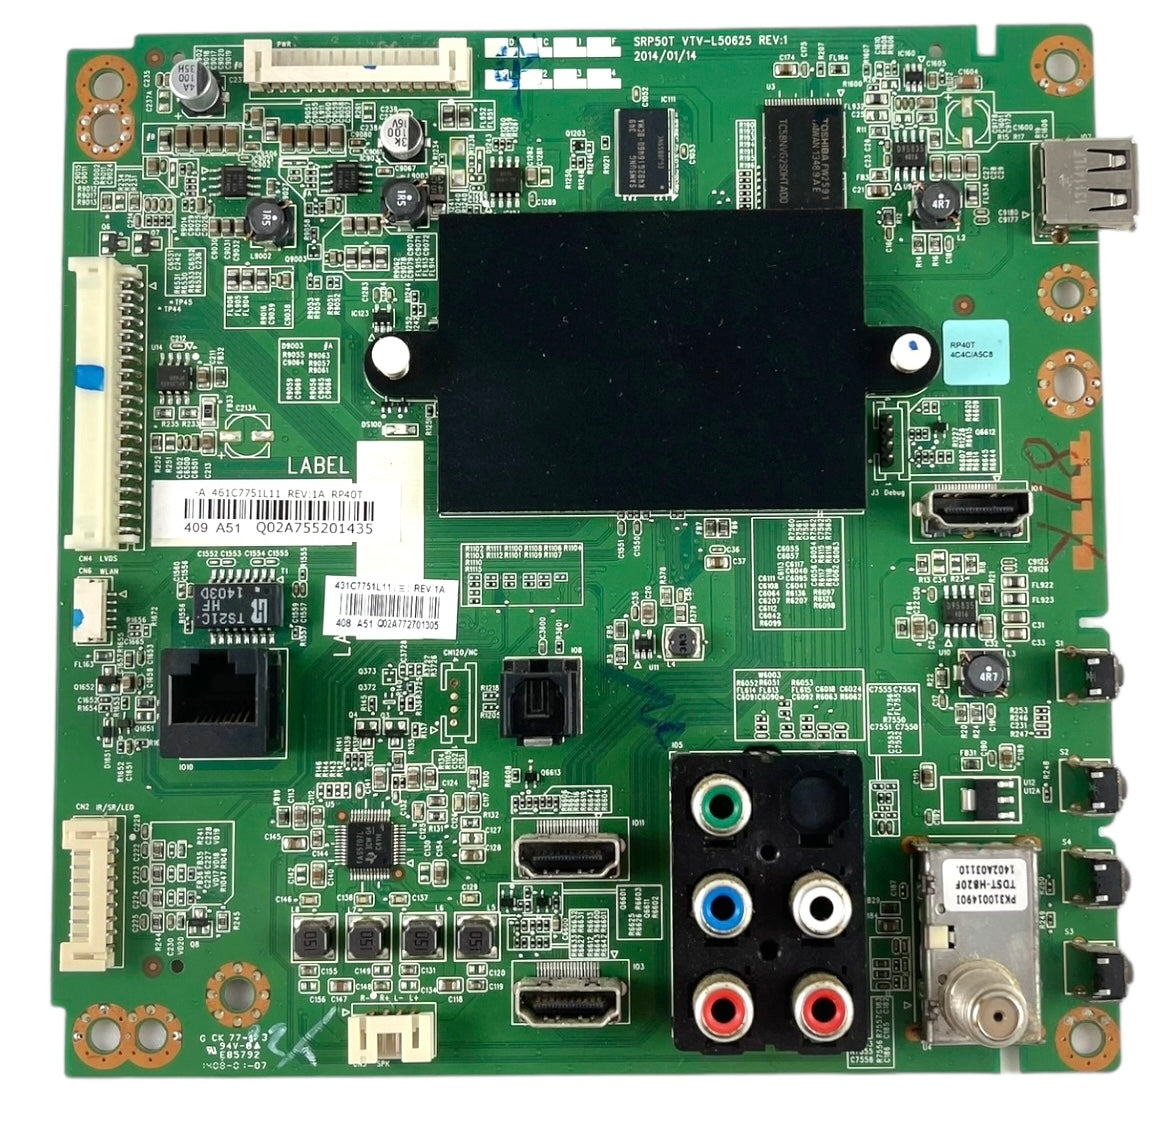 Toshiba 75037878 (461C7751L11) Main Board for 40L3400U